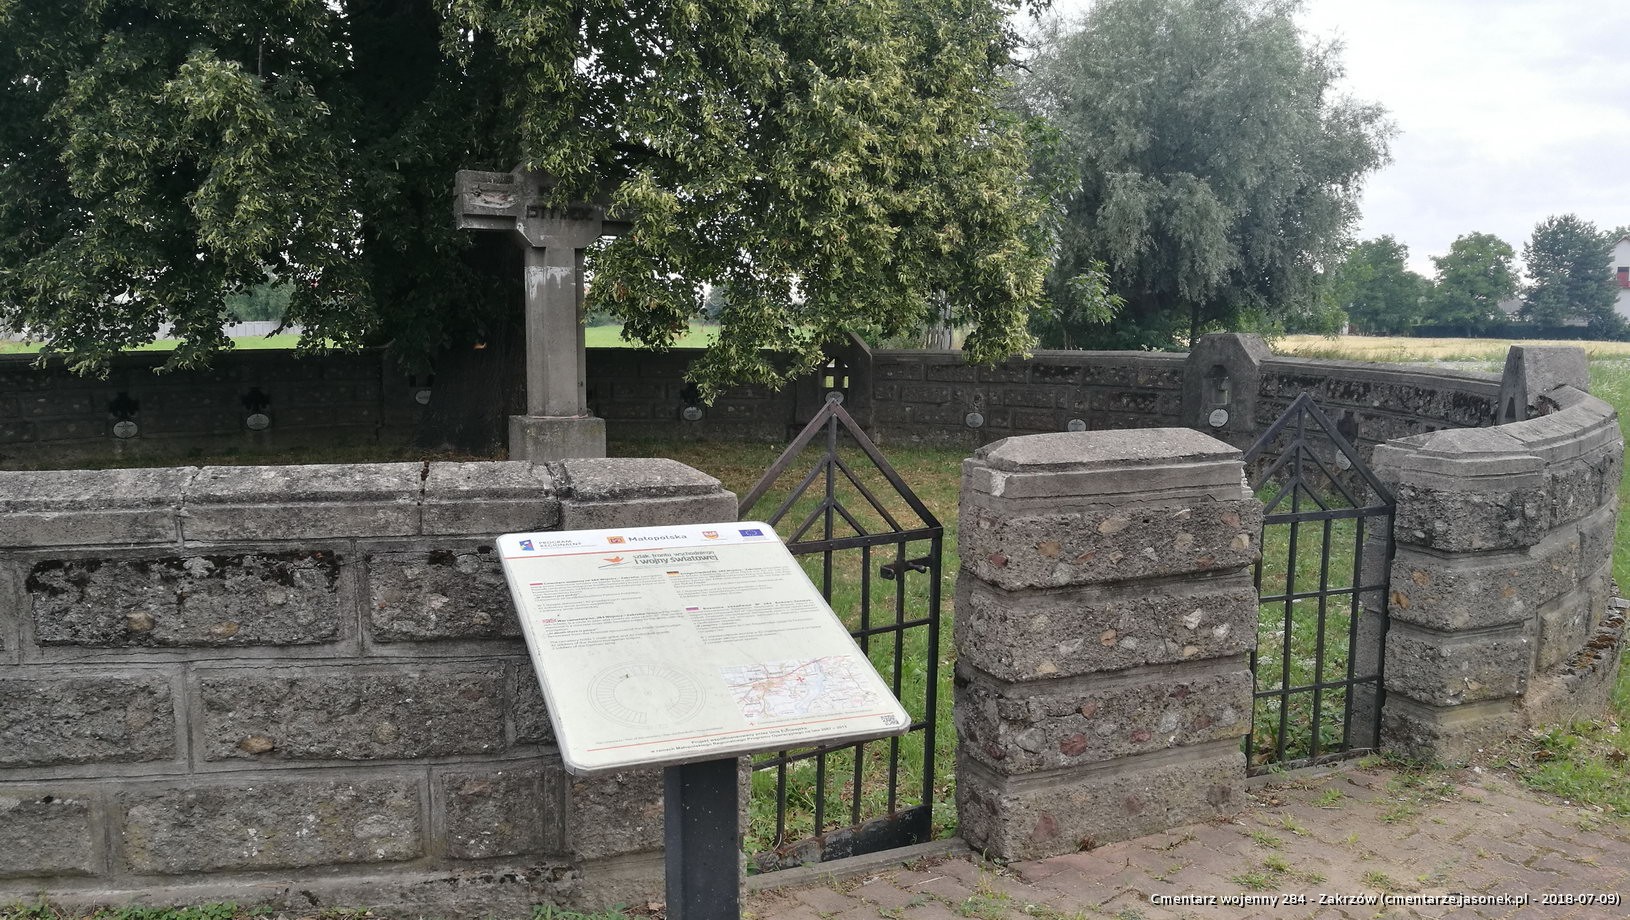 Cmentarz wojenny z I wojny nr 284 - Zakrzów